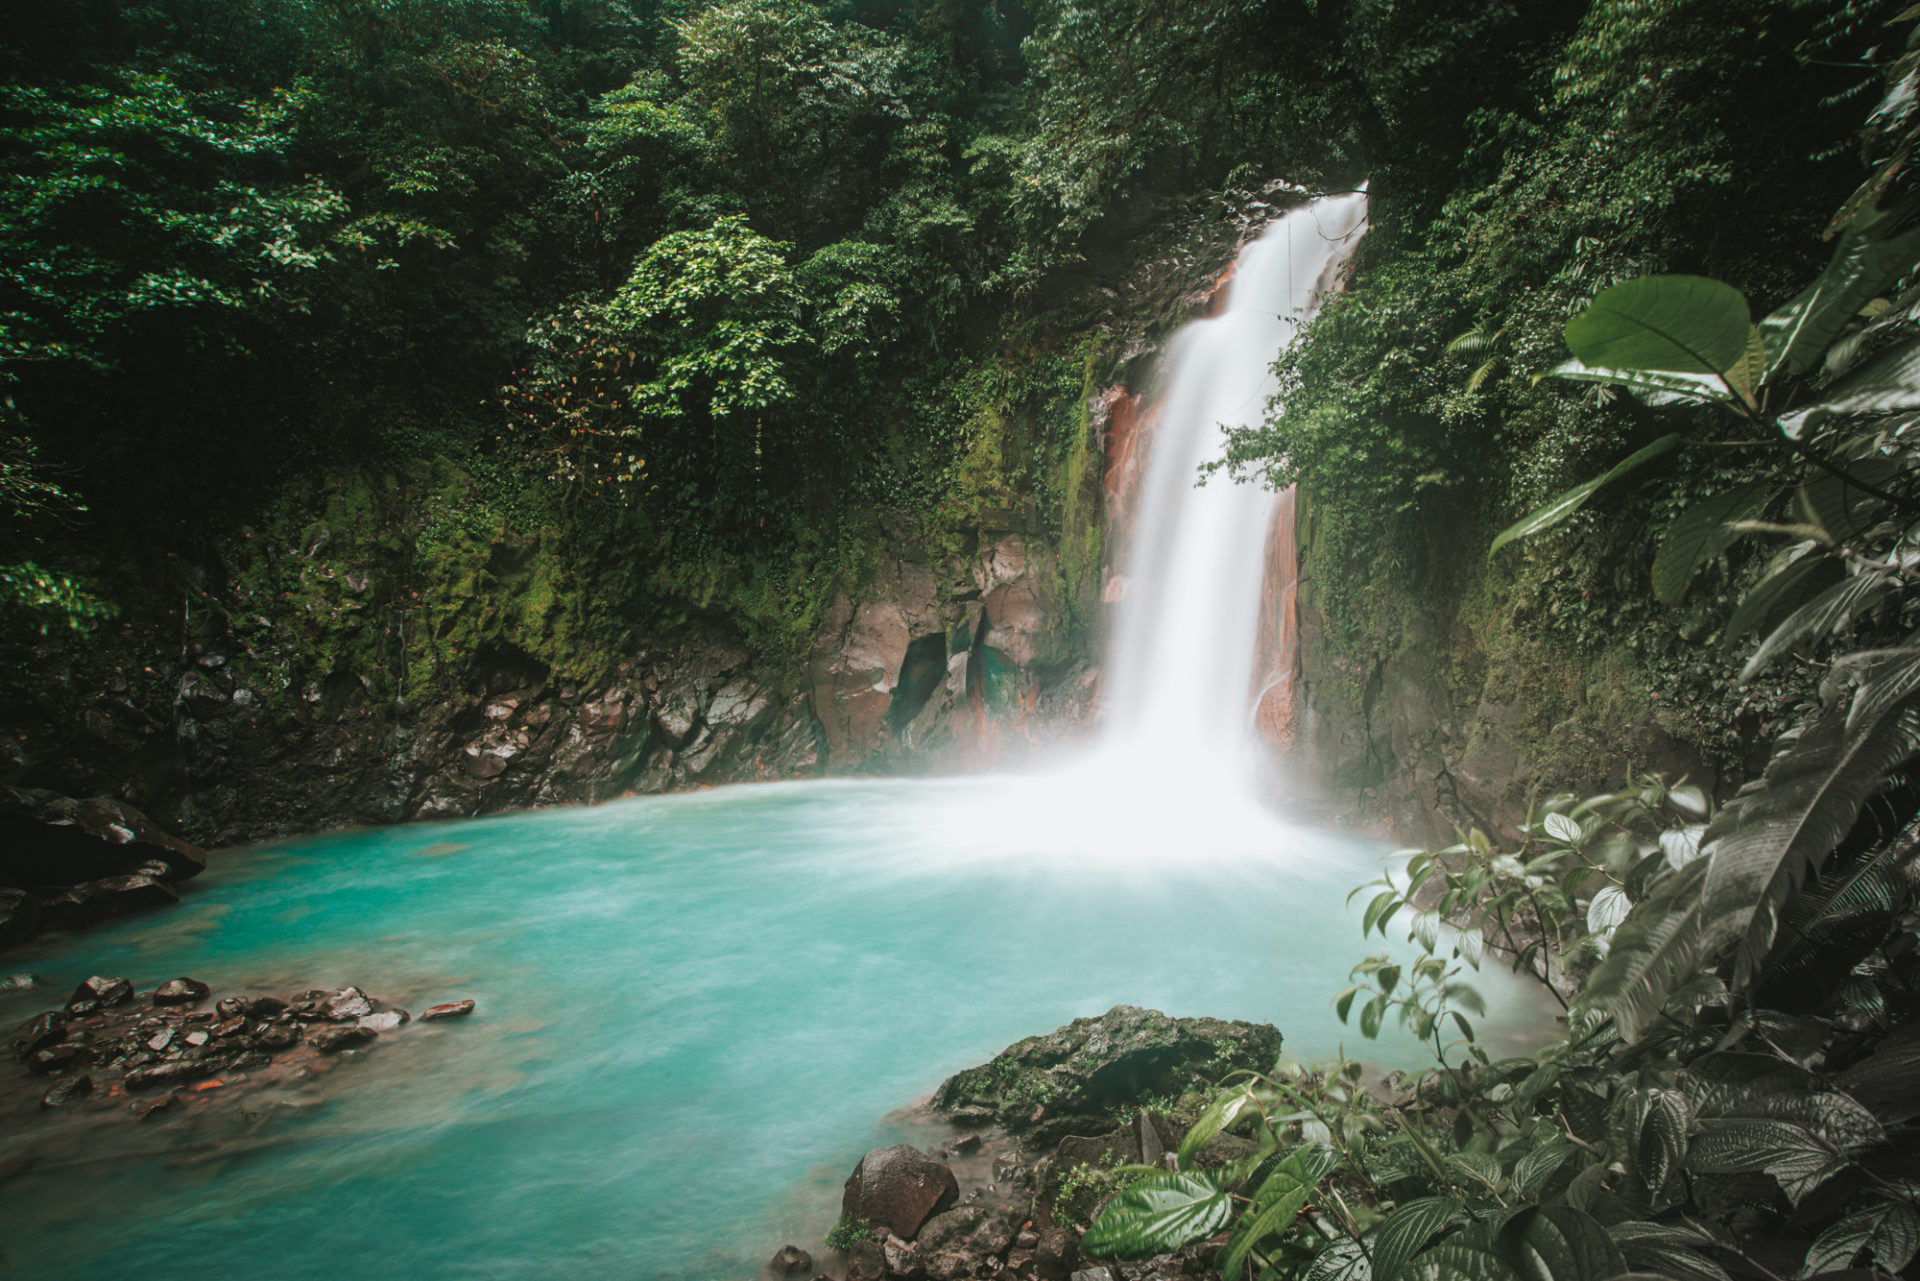 Rio Celeste Waterfall at Tenorio National Park